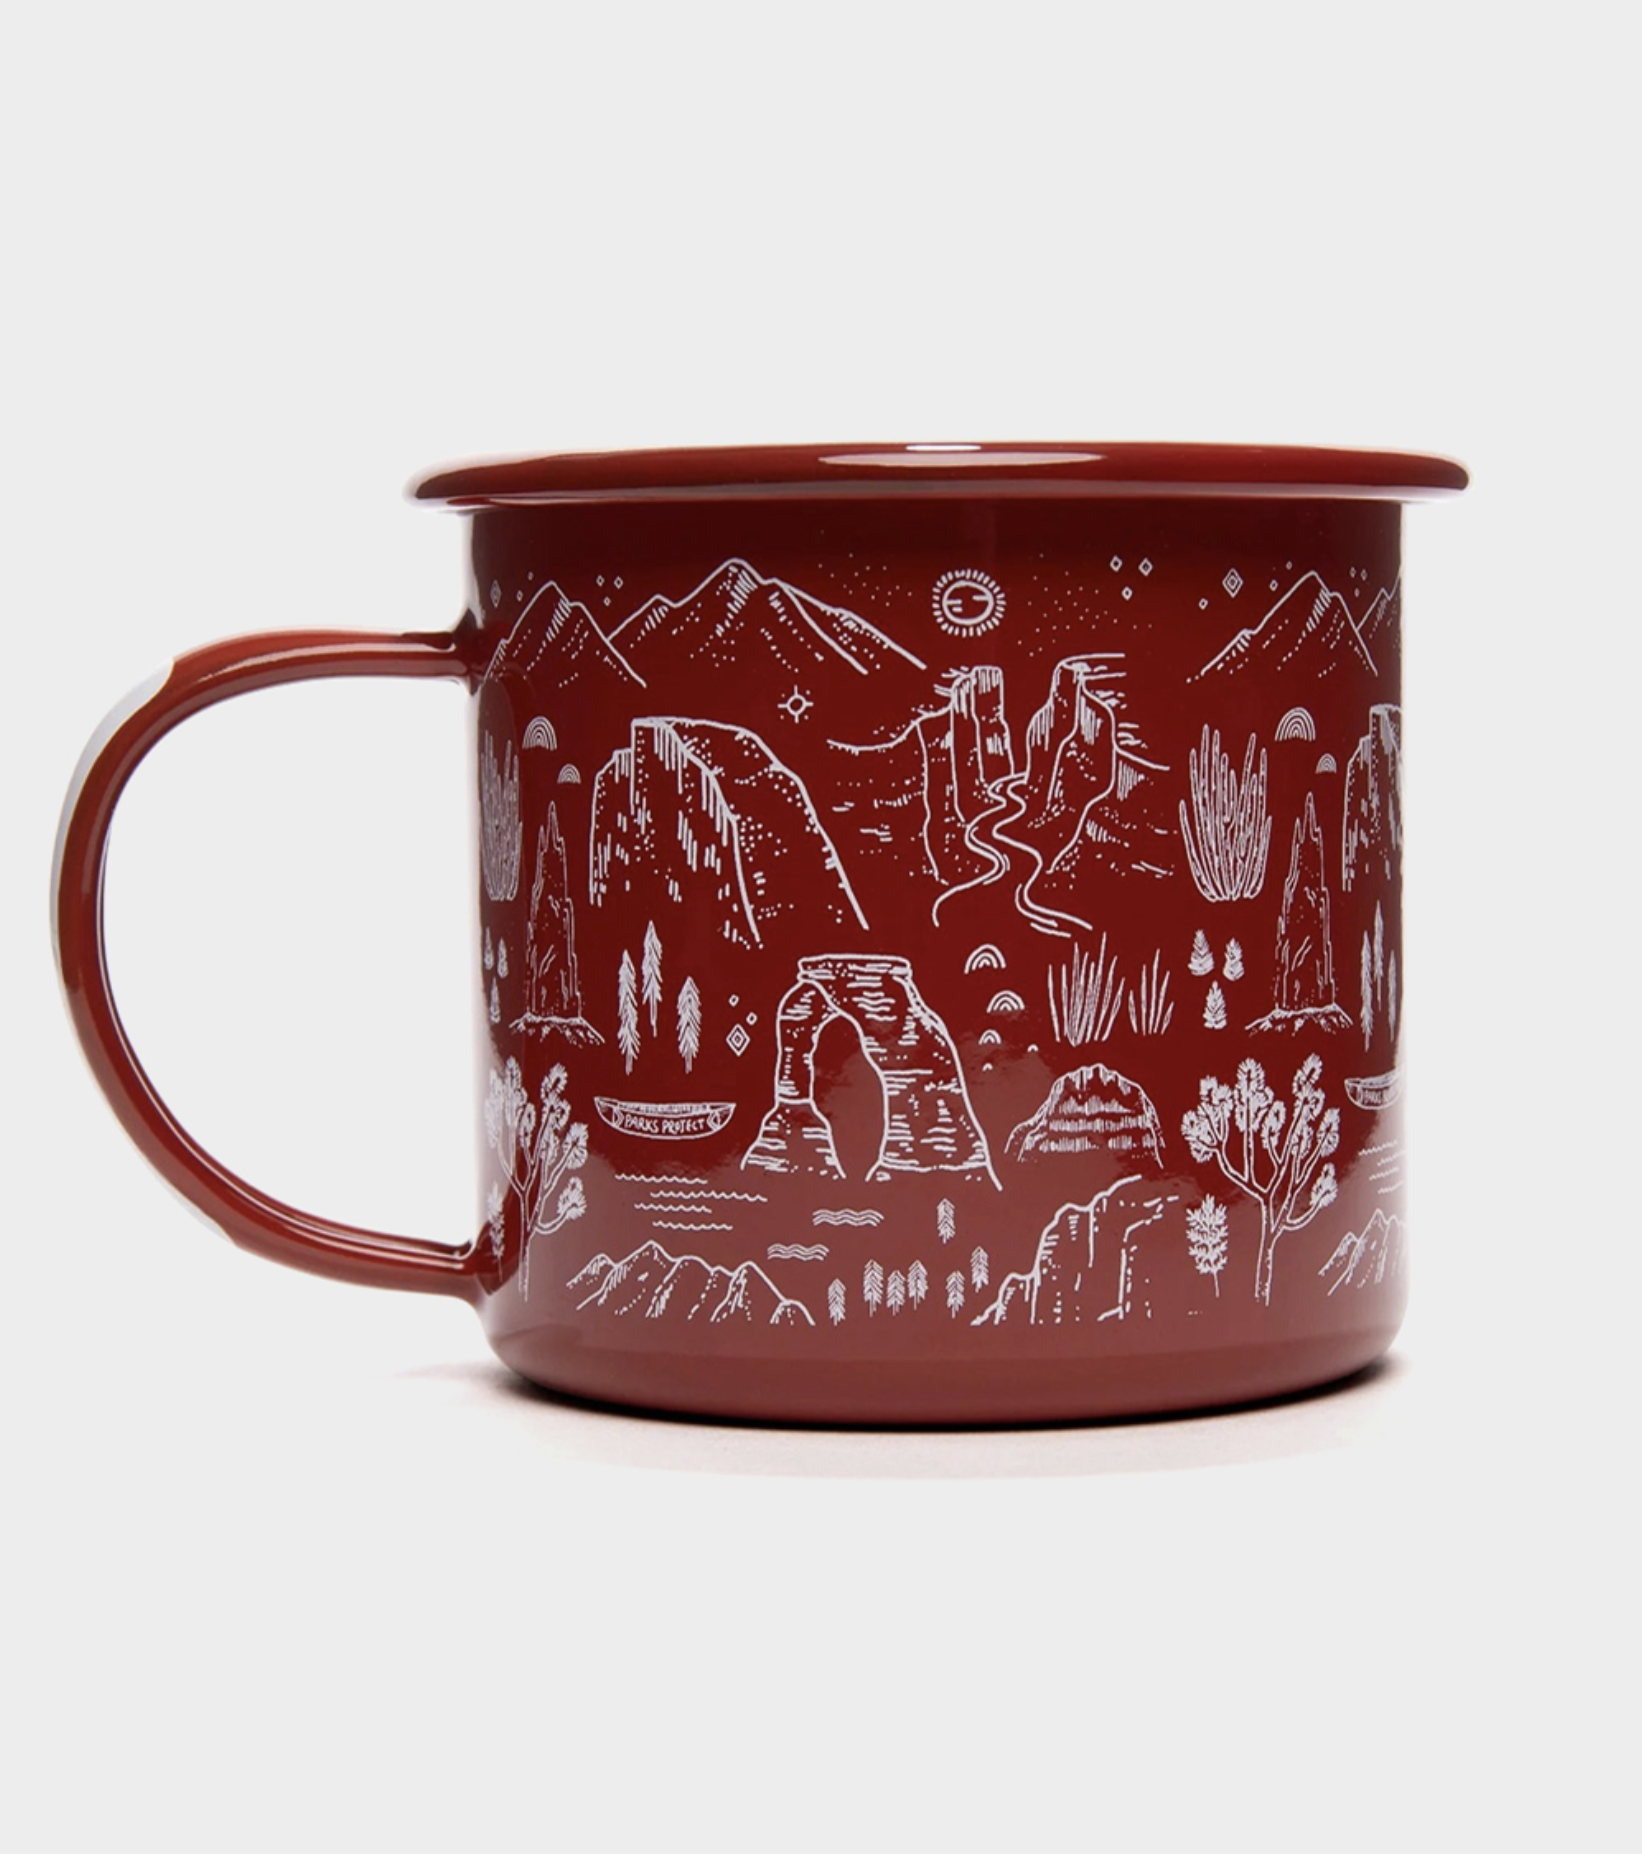 National Parks Iconic Enamel Mug